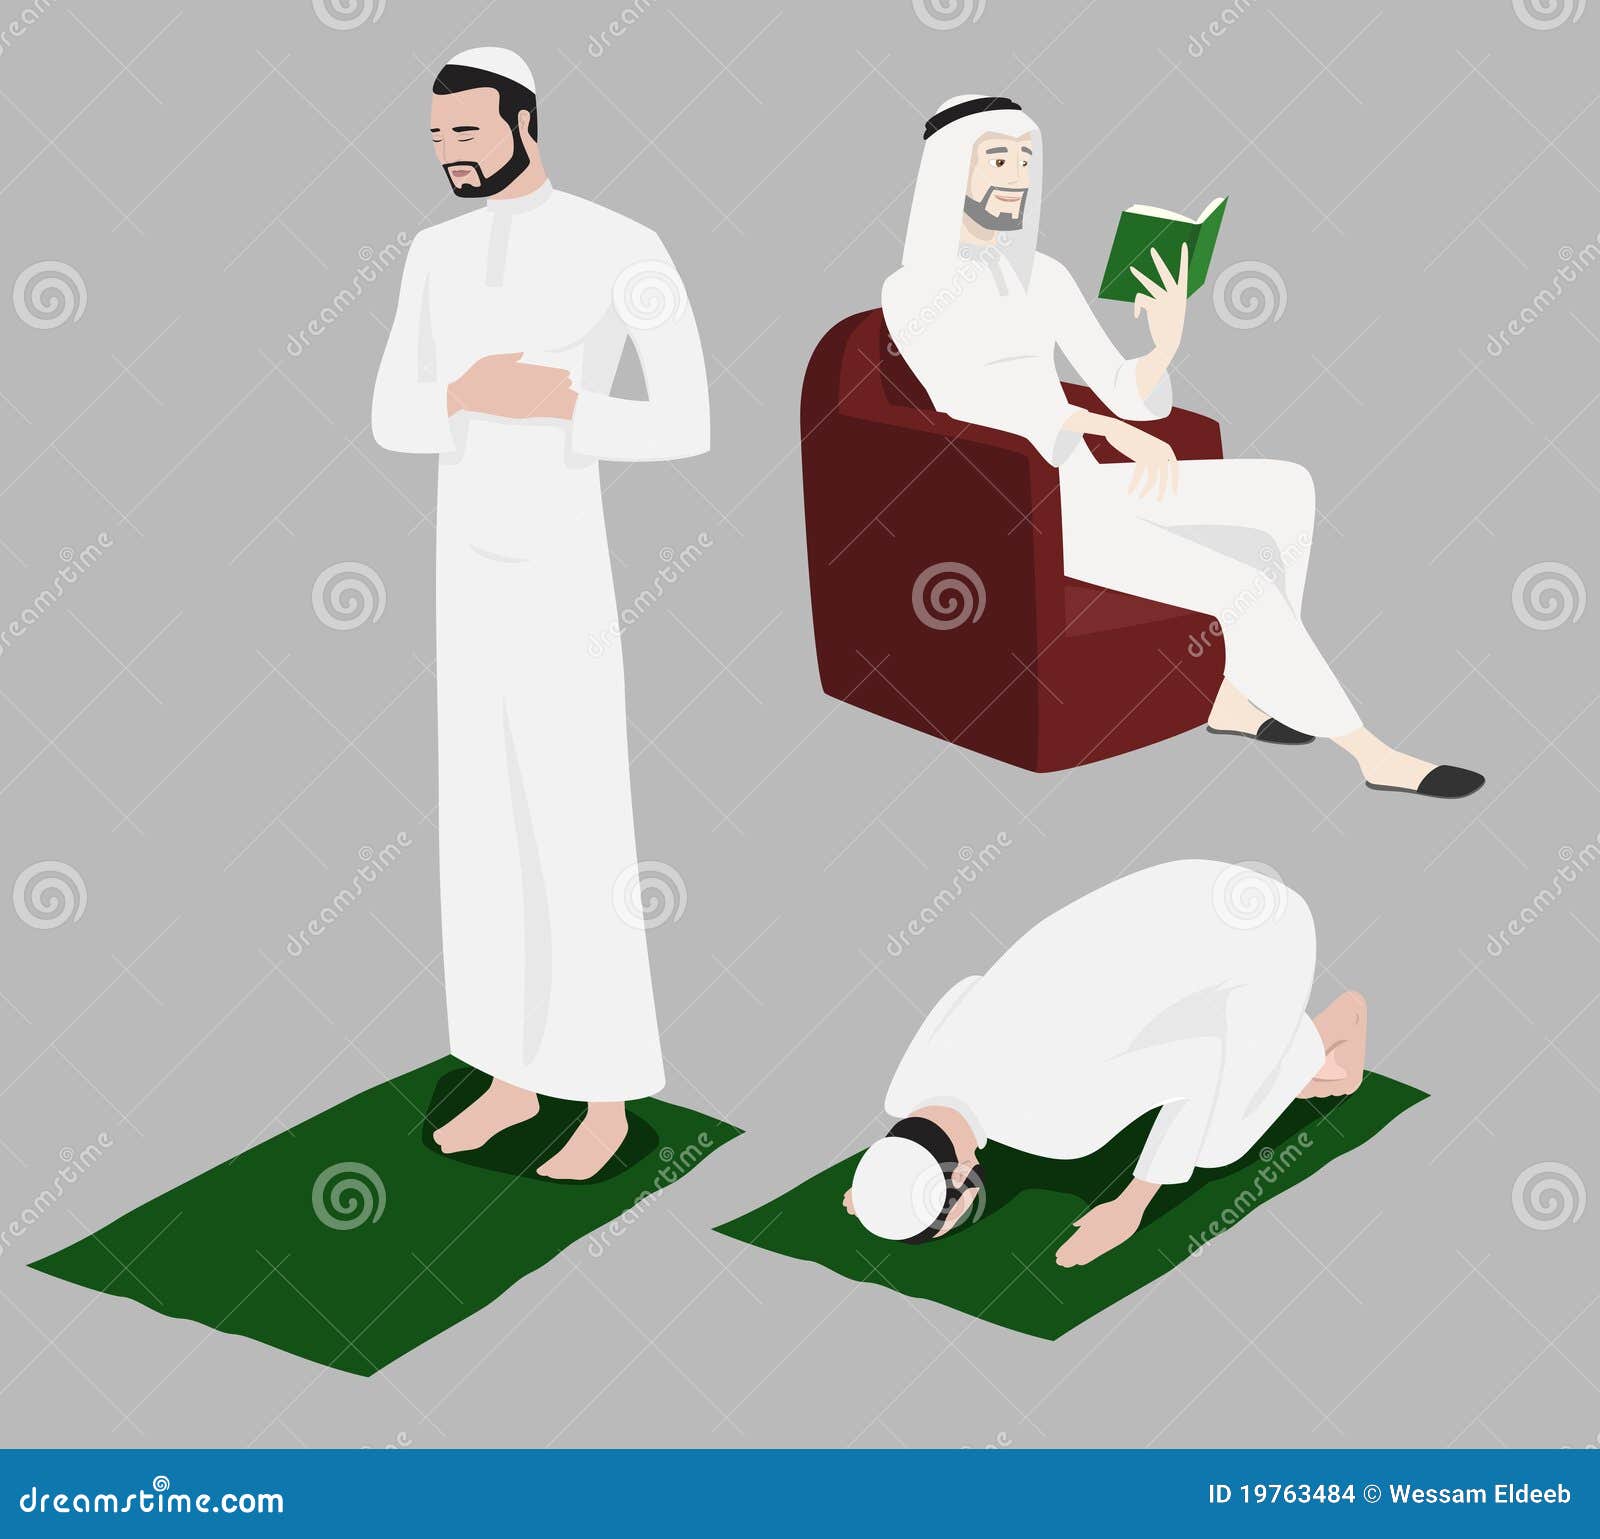 khaliji men doing religious rituals